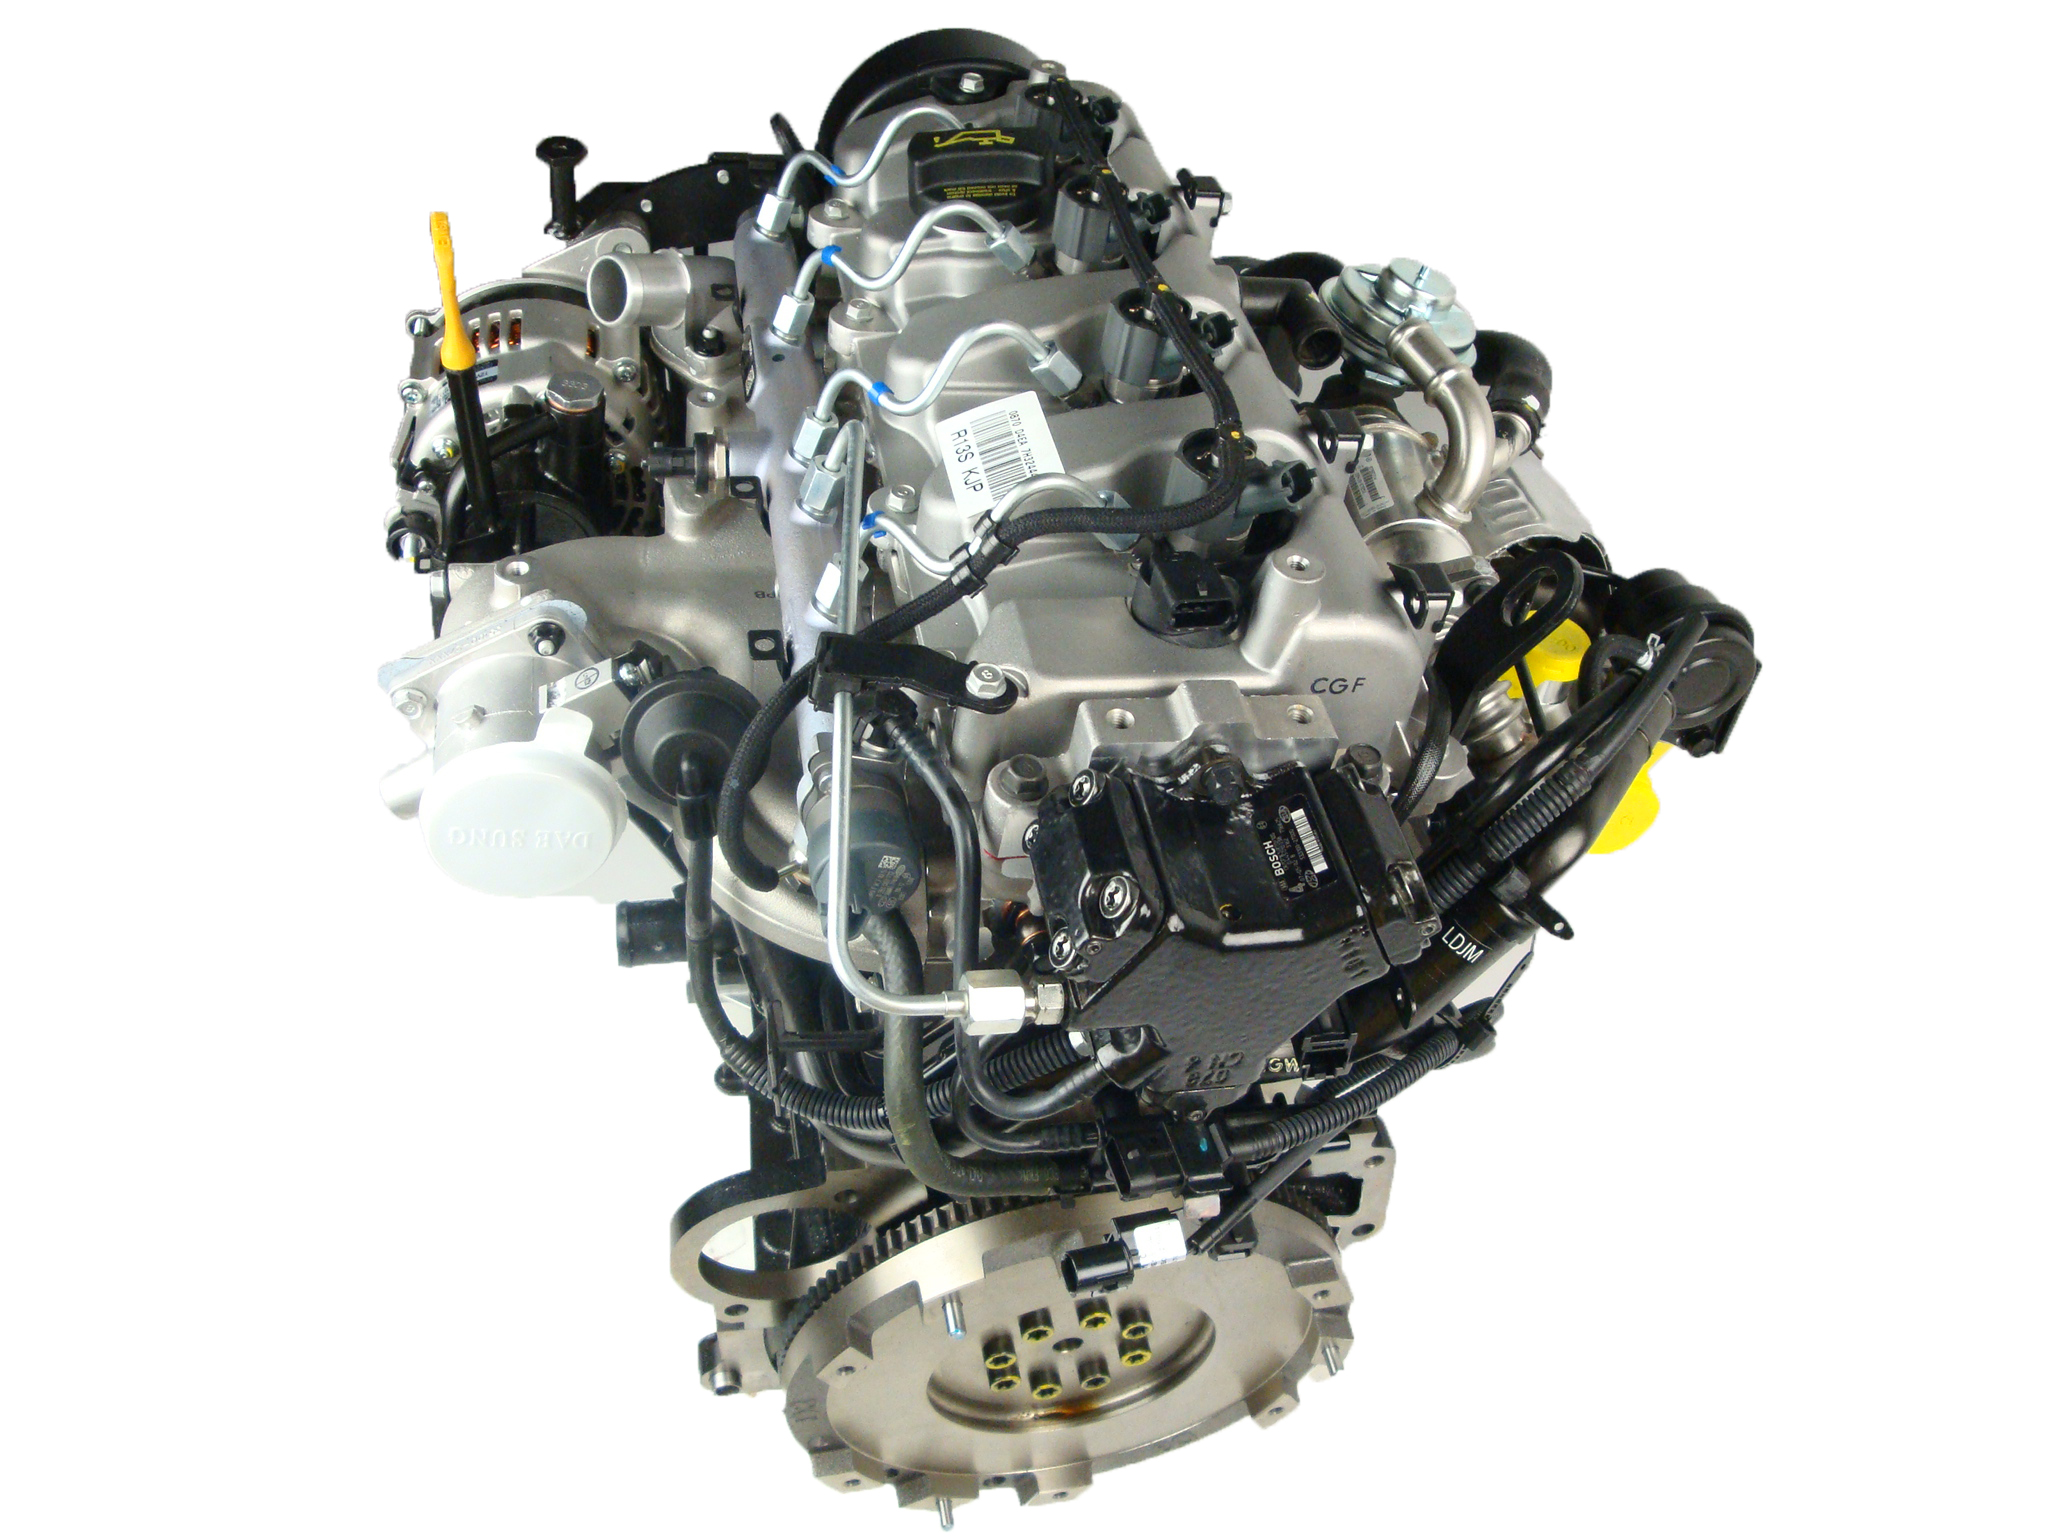 Спортейдж дизель 136 л с. Hyundai Tucson 2.0 CRDI двигатель. Двигатель Hyundai Tucson d4ea 2.0 дизель. Двигатель Санта Фе 2.0 дизель d4ea. Двигатель Киа Спортейдж 2.0 дизель.